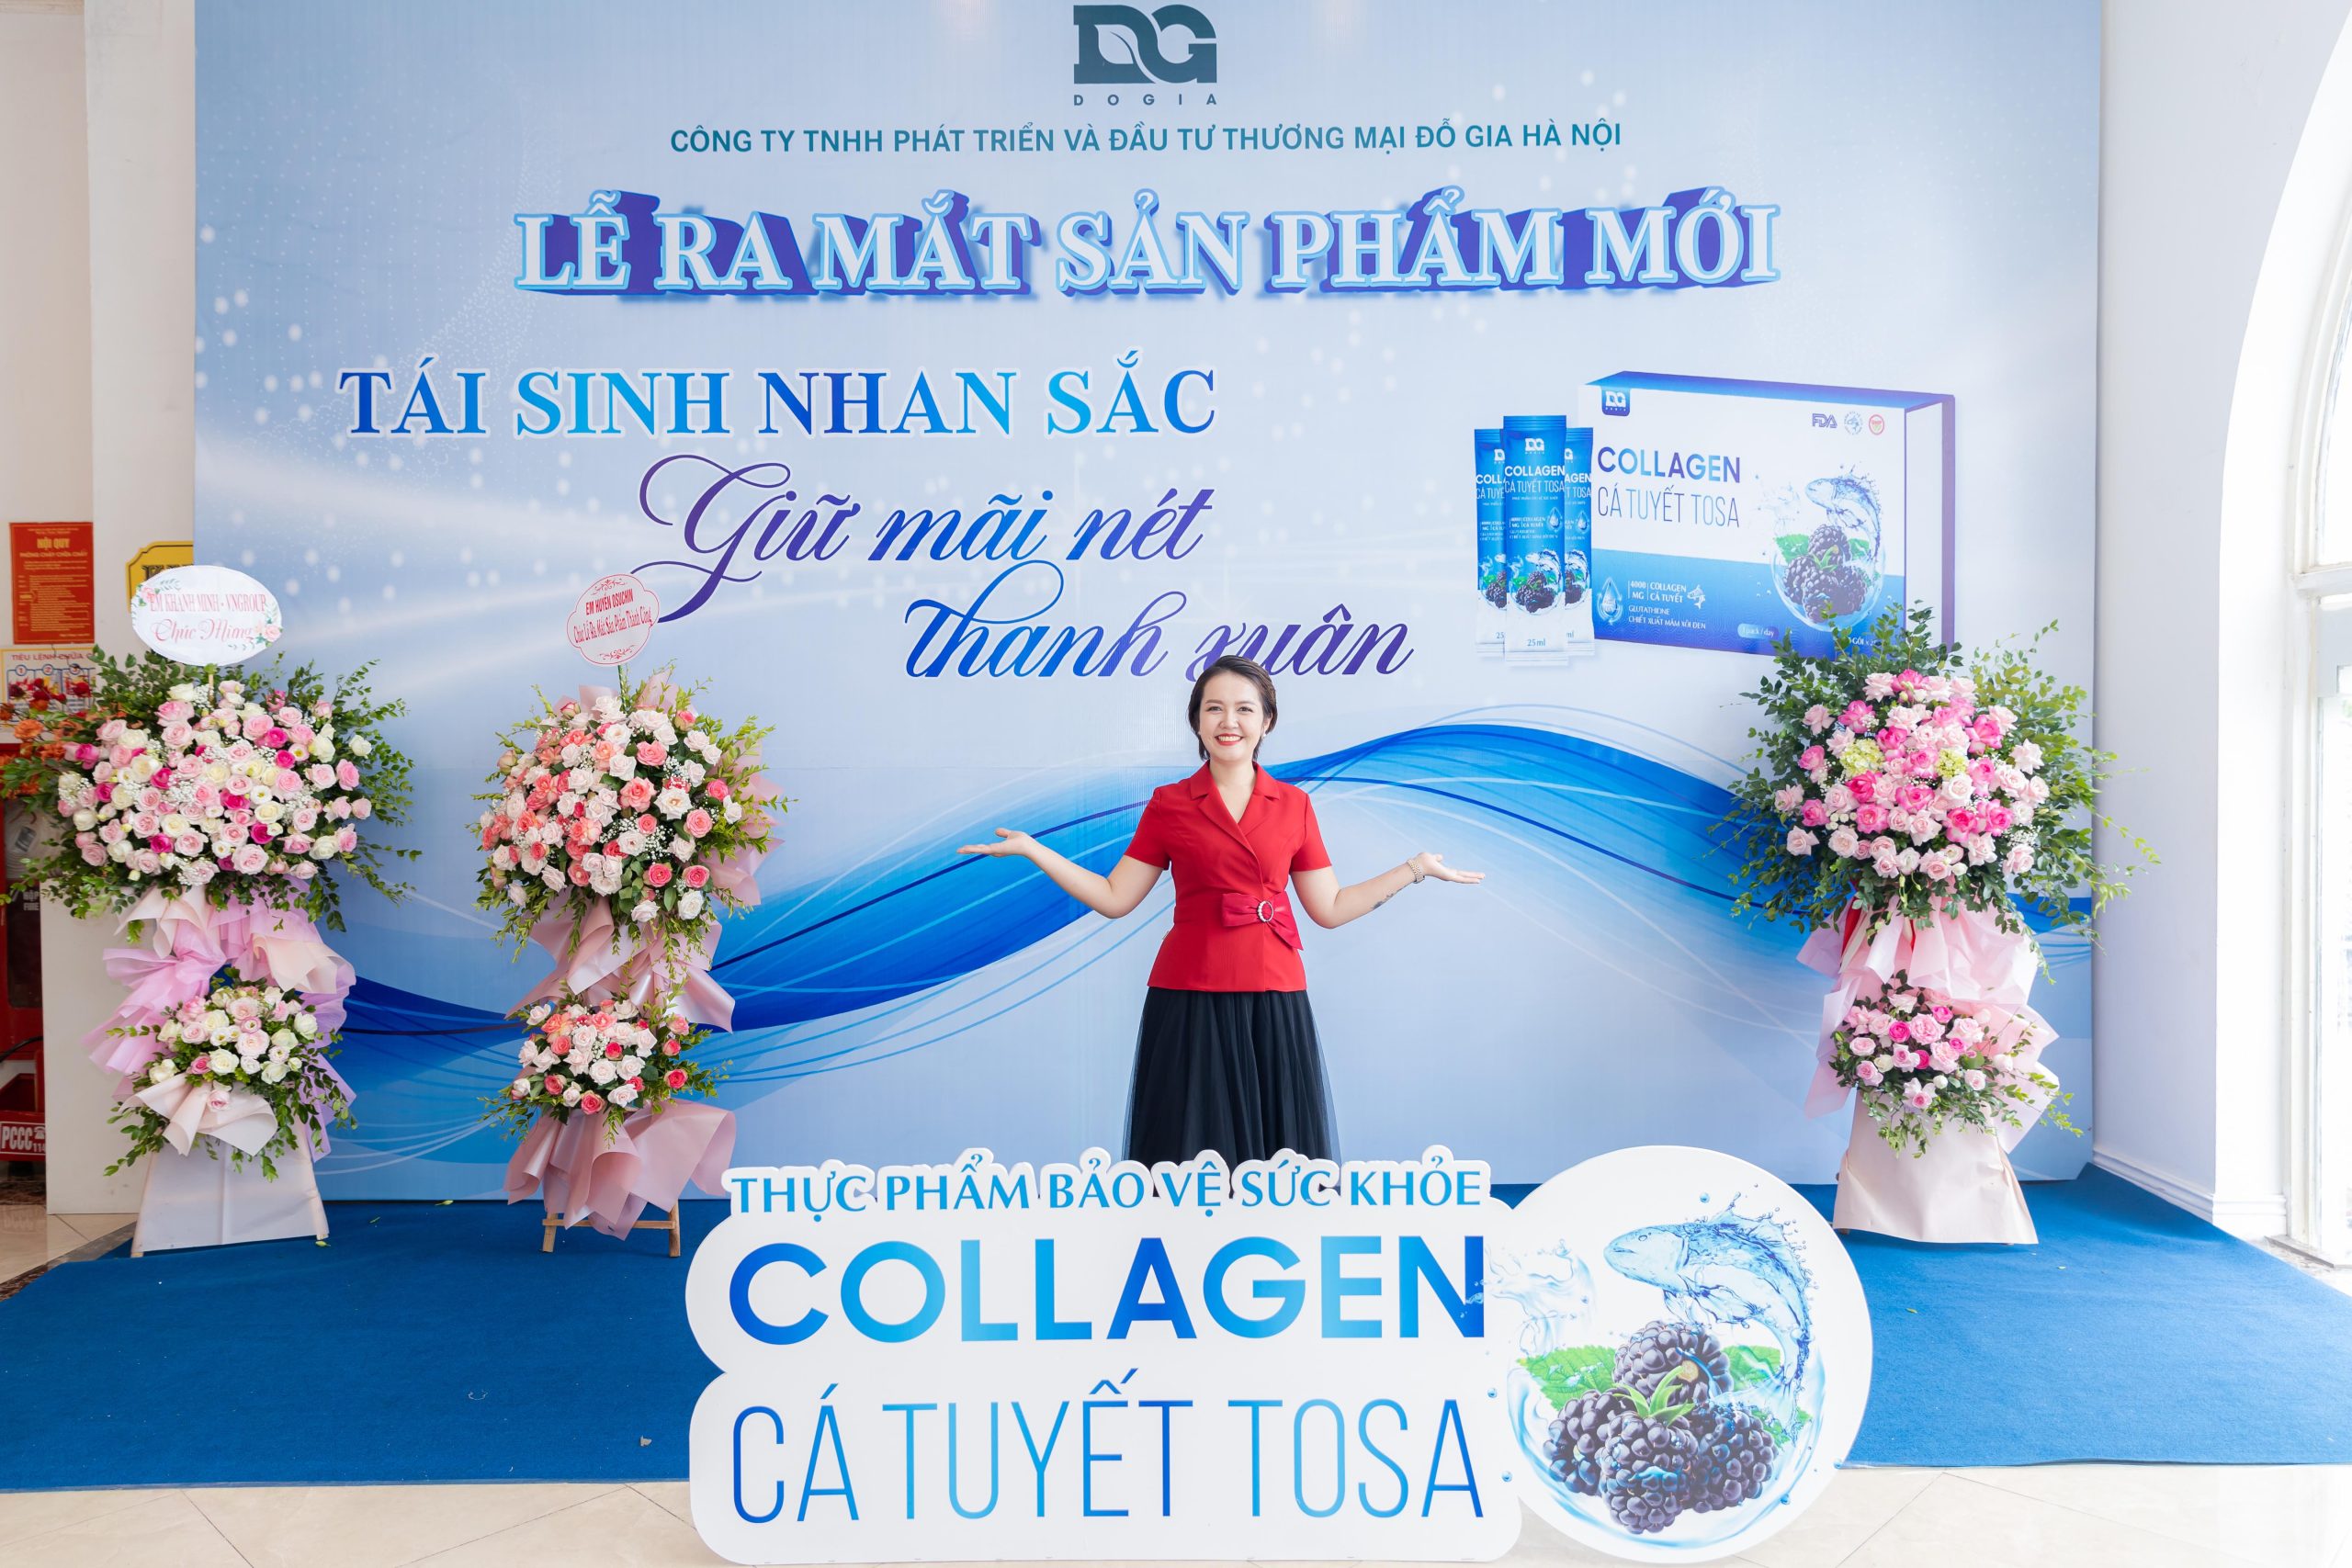 Hình ảnh sản phẩm Collagen Cá Tuyết Tosa chính thức công bố ra mắt